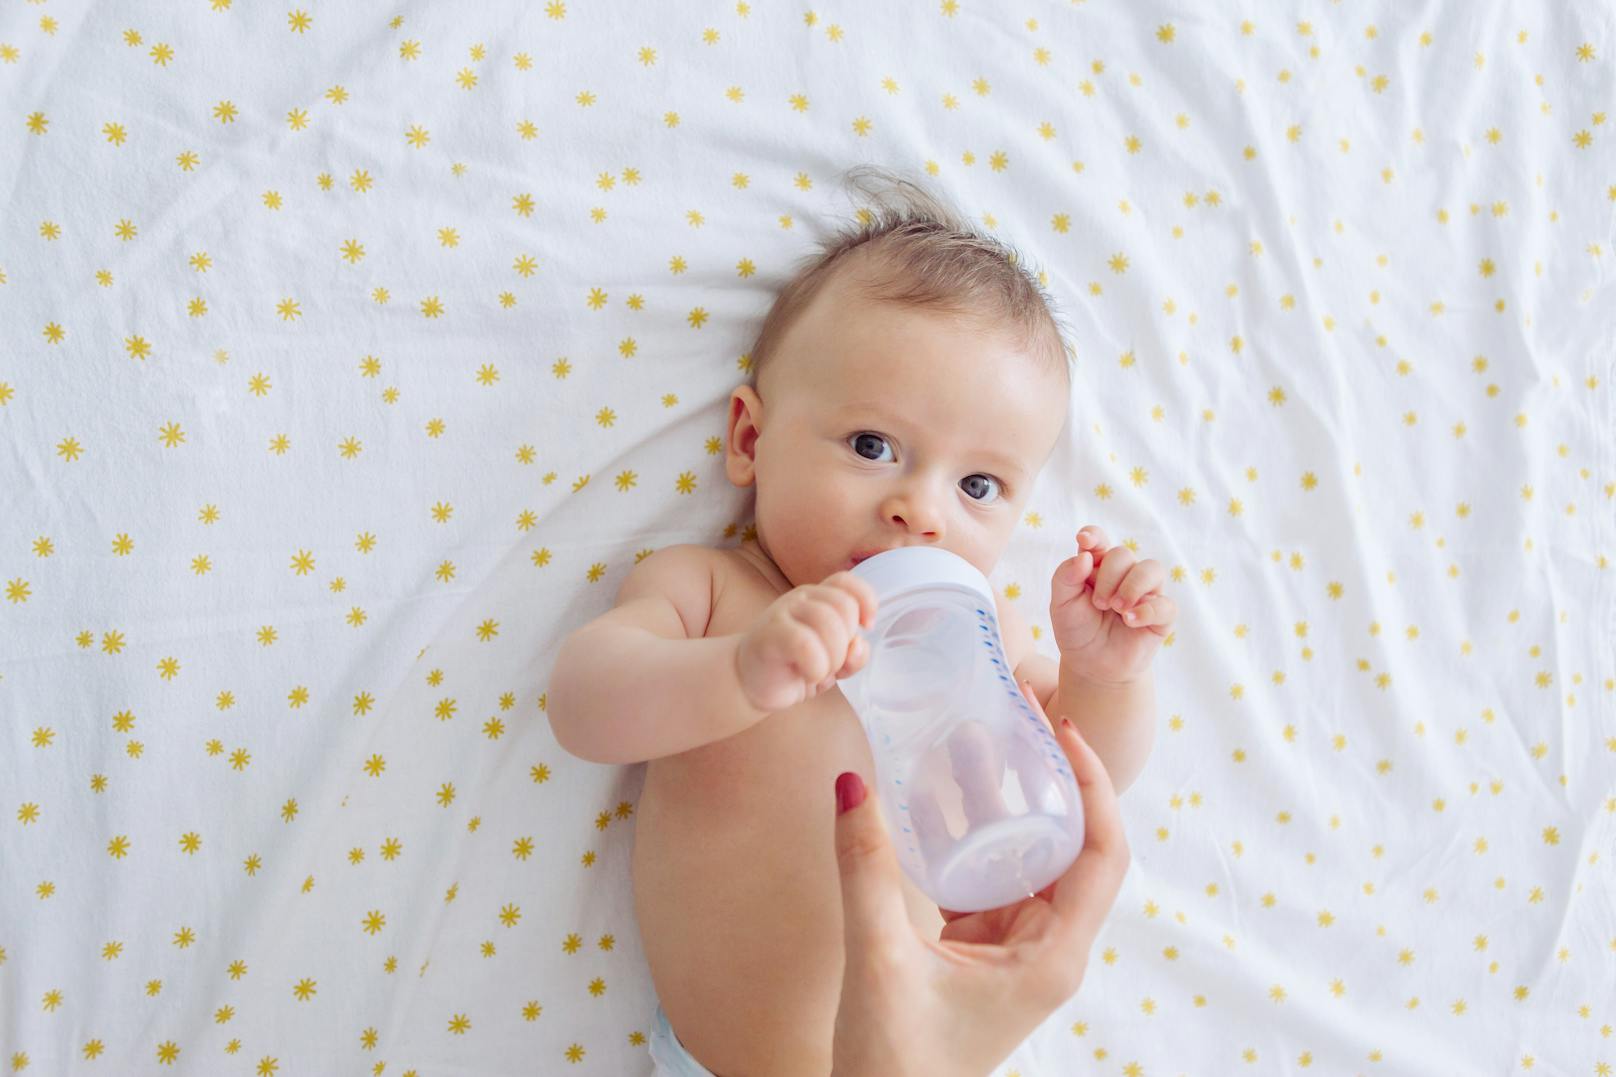 Laut einer aktuellen Studie nehmen Säuglinge, die mit der Flasche aufgezogen werden, in den ersten zwölf Lebensmonaten durchschnittlich 1,5 Millionen Mikroplastik-Partikel pro Tag auf.